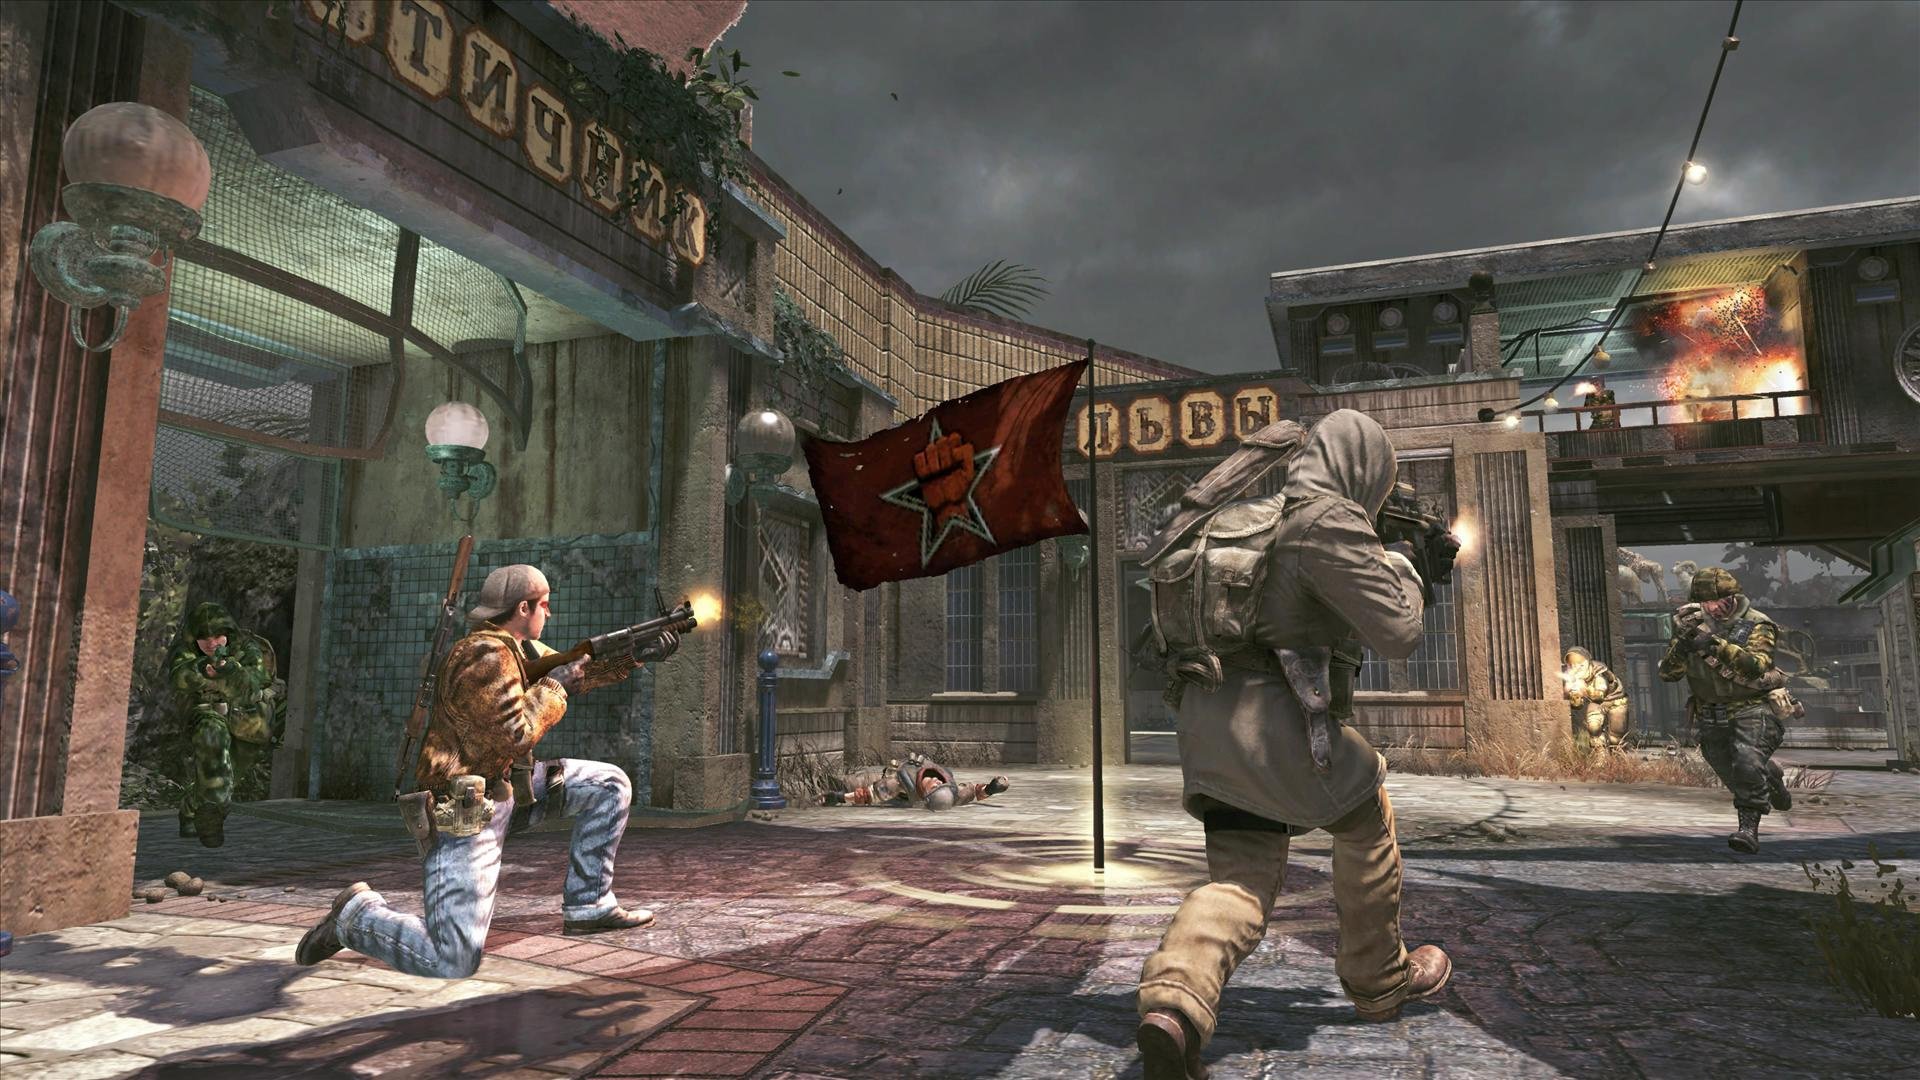 Call of Duty: Black Ops' foi o game mais vendido de 2010